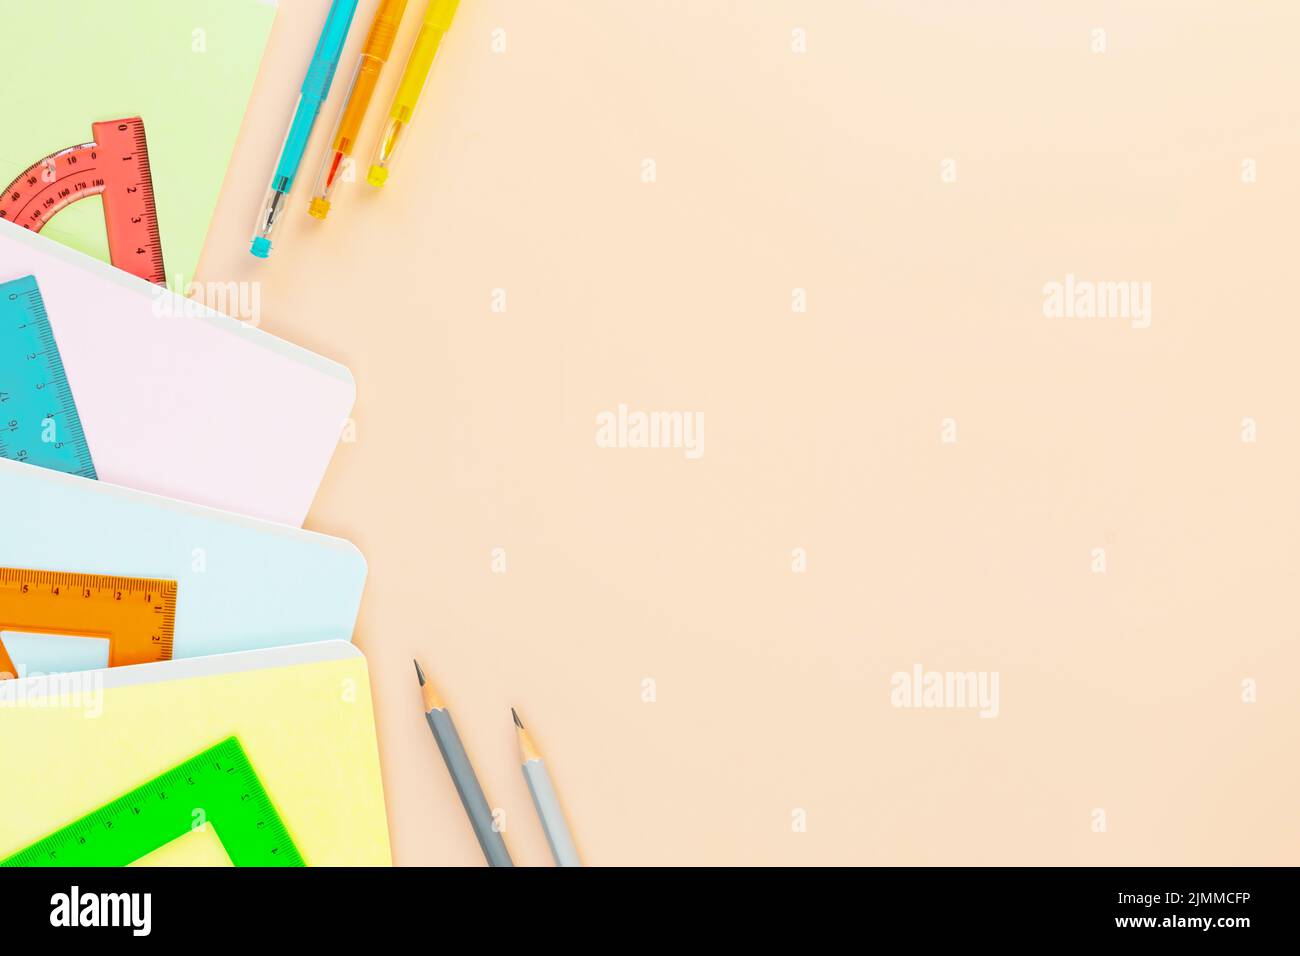 Ritorno a scuola con notebook, penne e righelli multicolore. Forniture scolastiche su sfondo avorio con spazio di copia. Concetto di vendita scolastica. FL Foto Stock